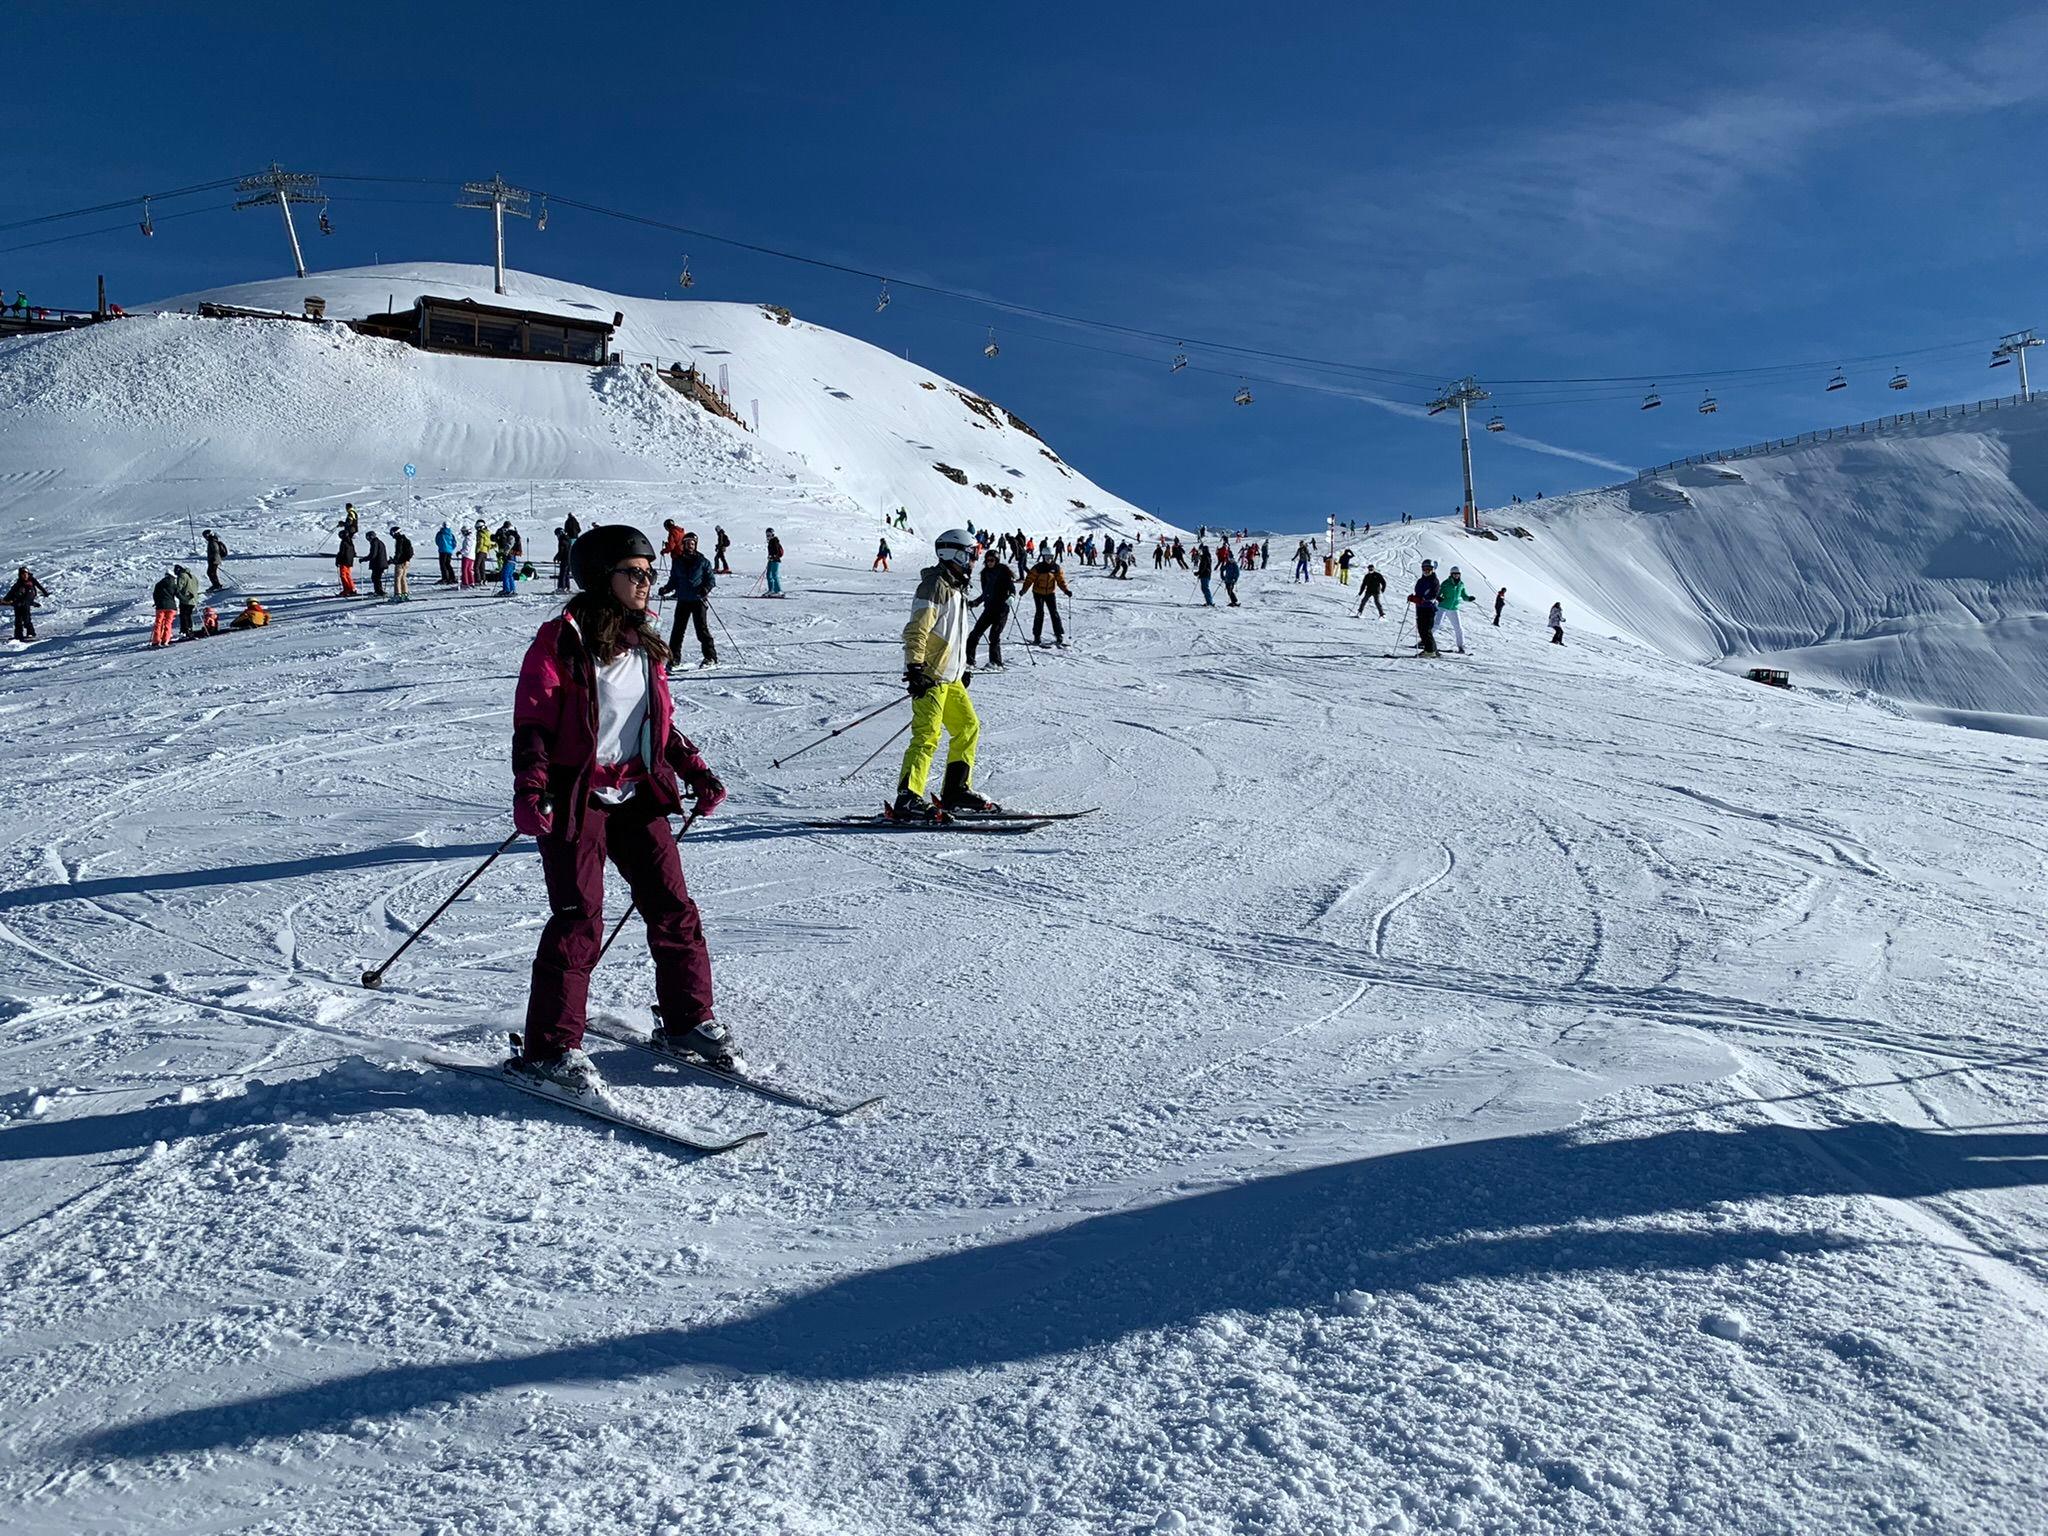 La station de ski La Plagne est très bien placée dans notre classement. LP/Aurélie Audureau